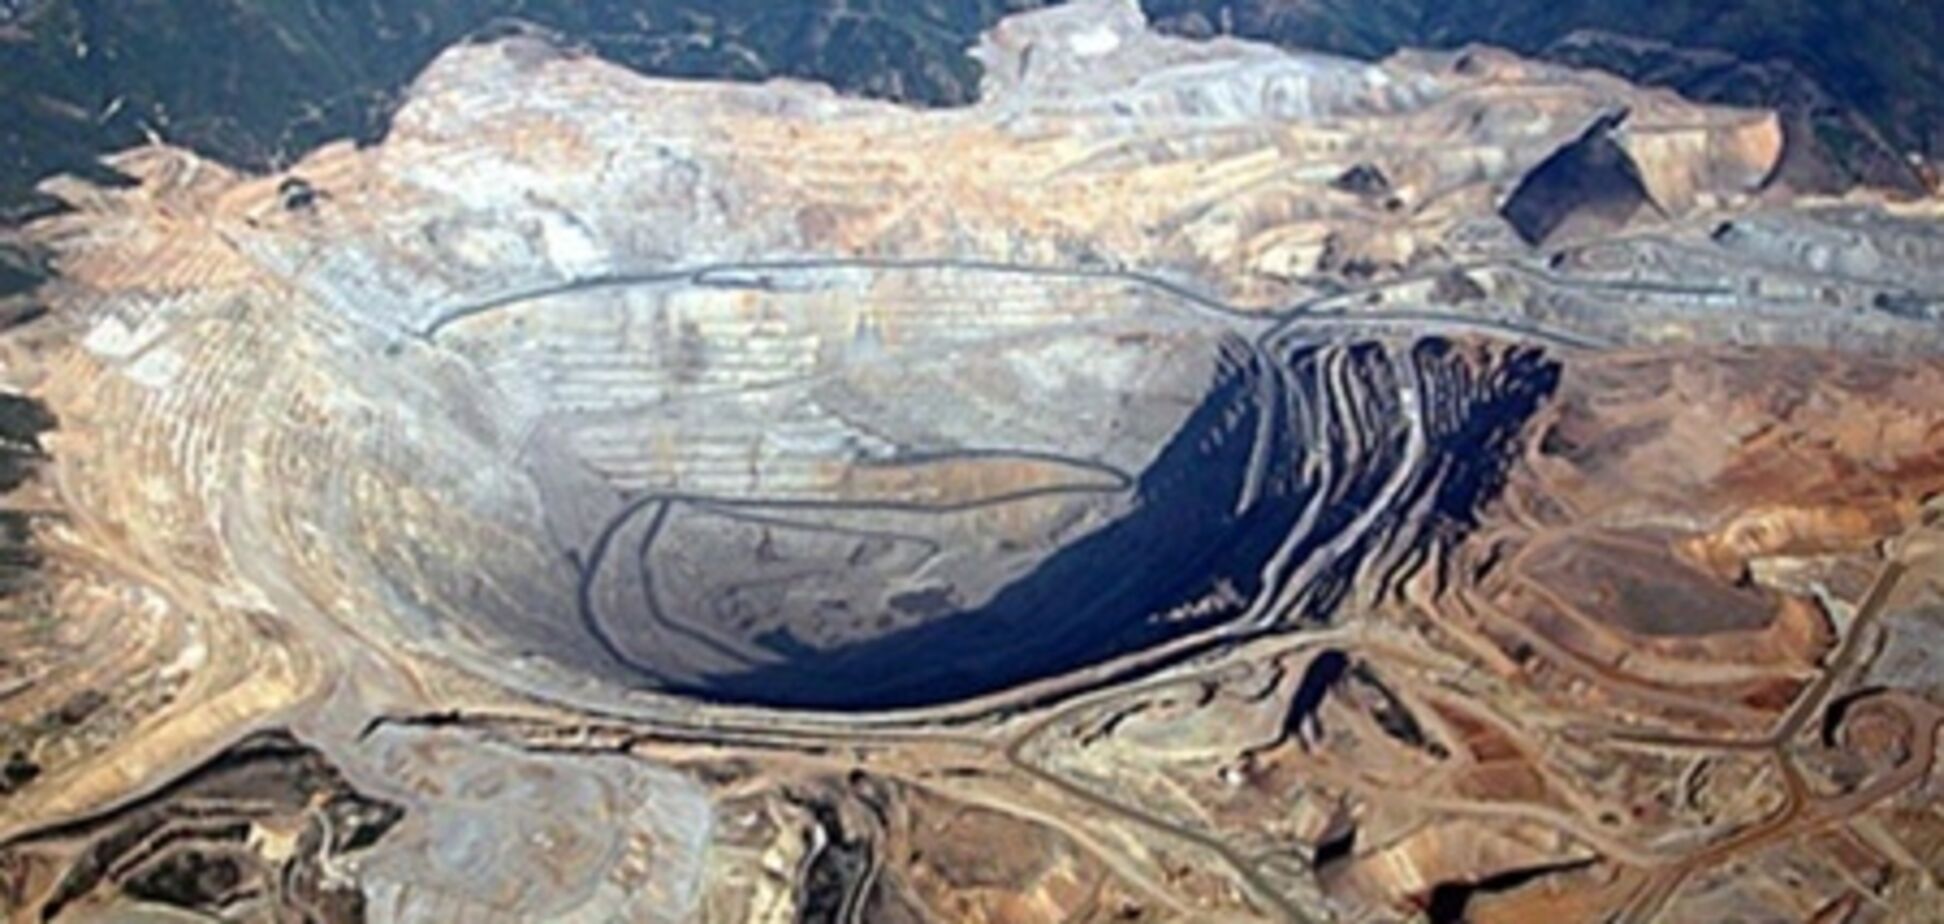 Обвал шахты в Индонезии: горняки под завалами